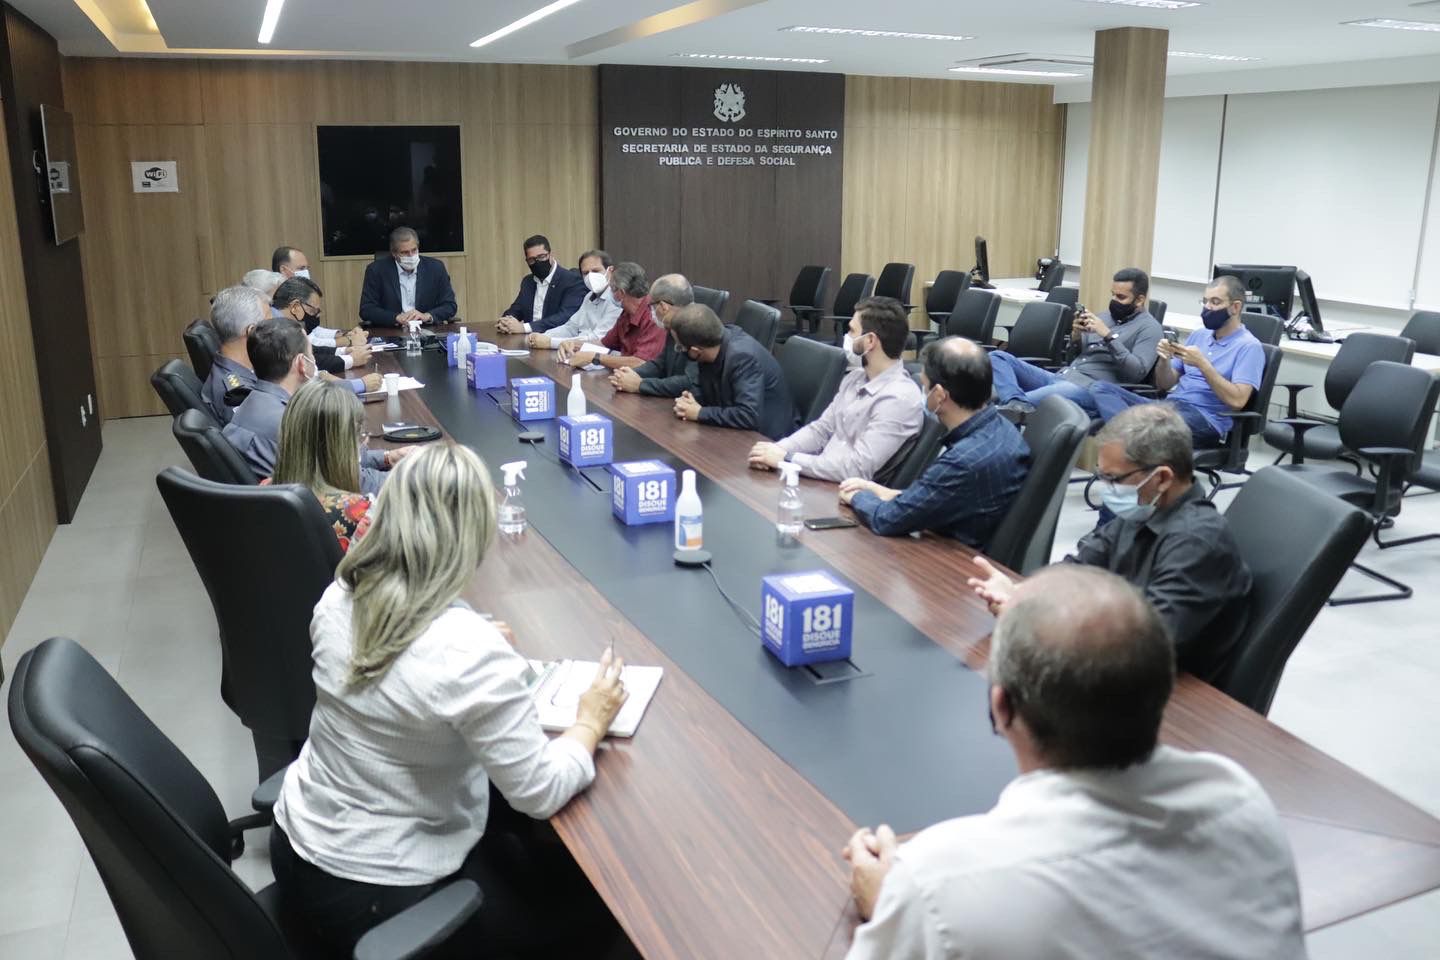 Durante a reunião, foram propostas sugestões para coibir a criminalidade na cidade de Santa Teresa. / Foto: Bruno Fritz